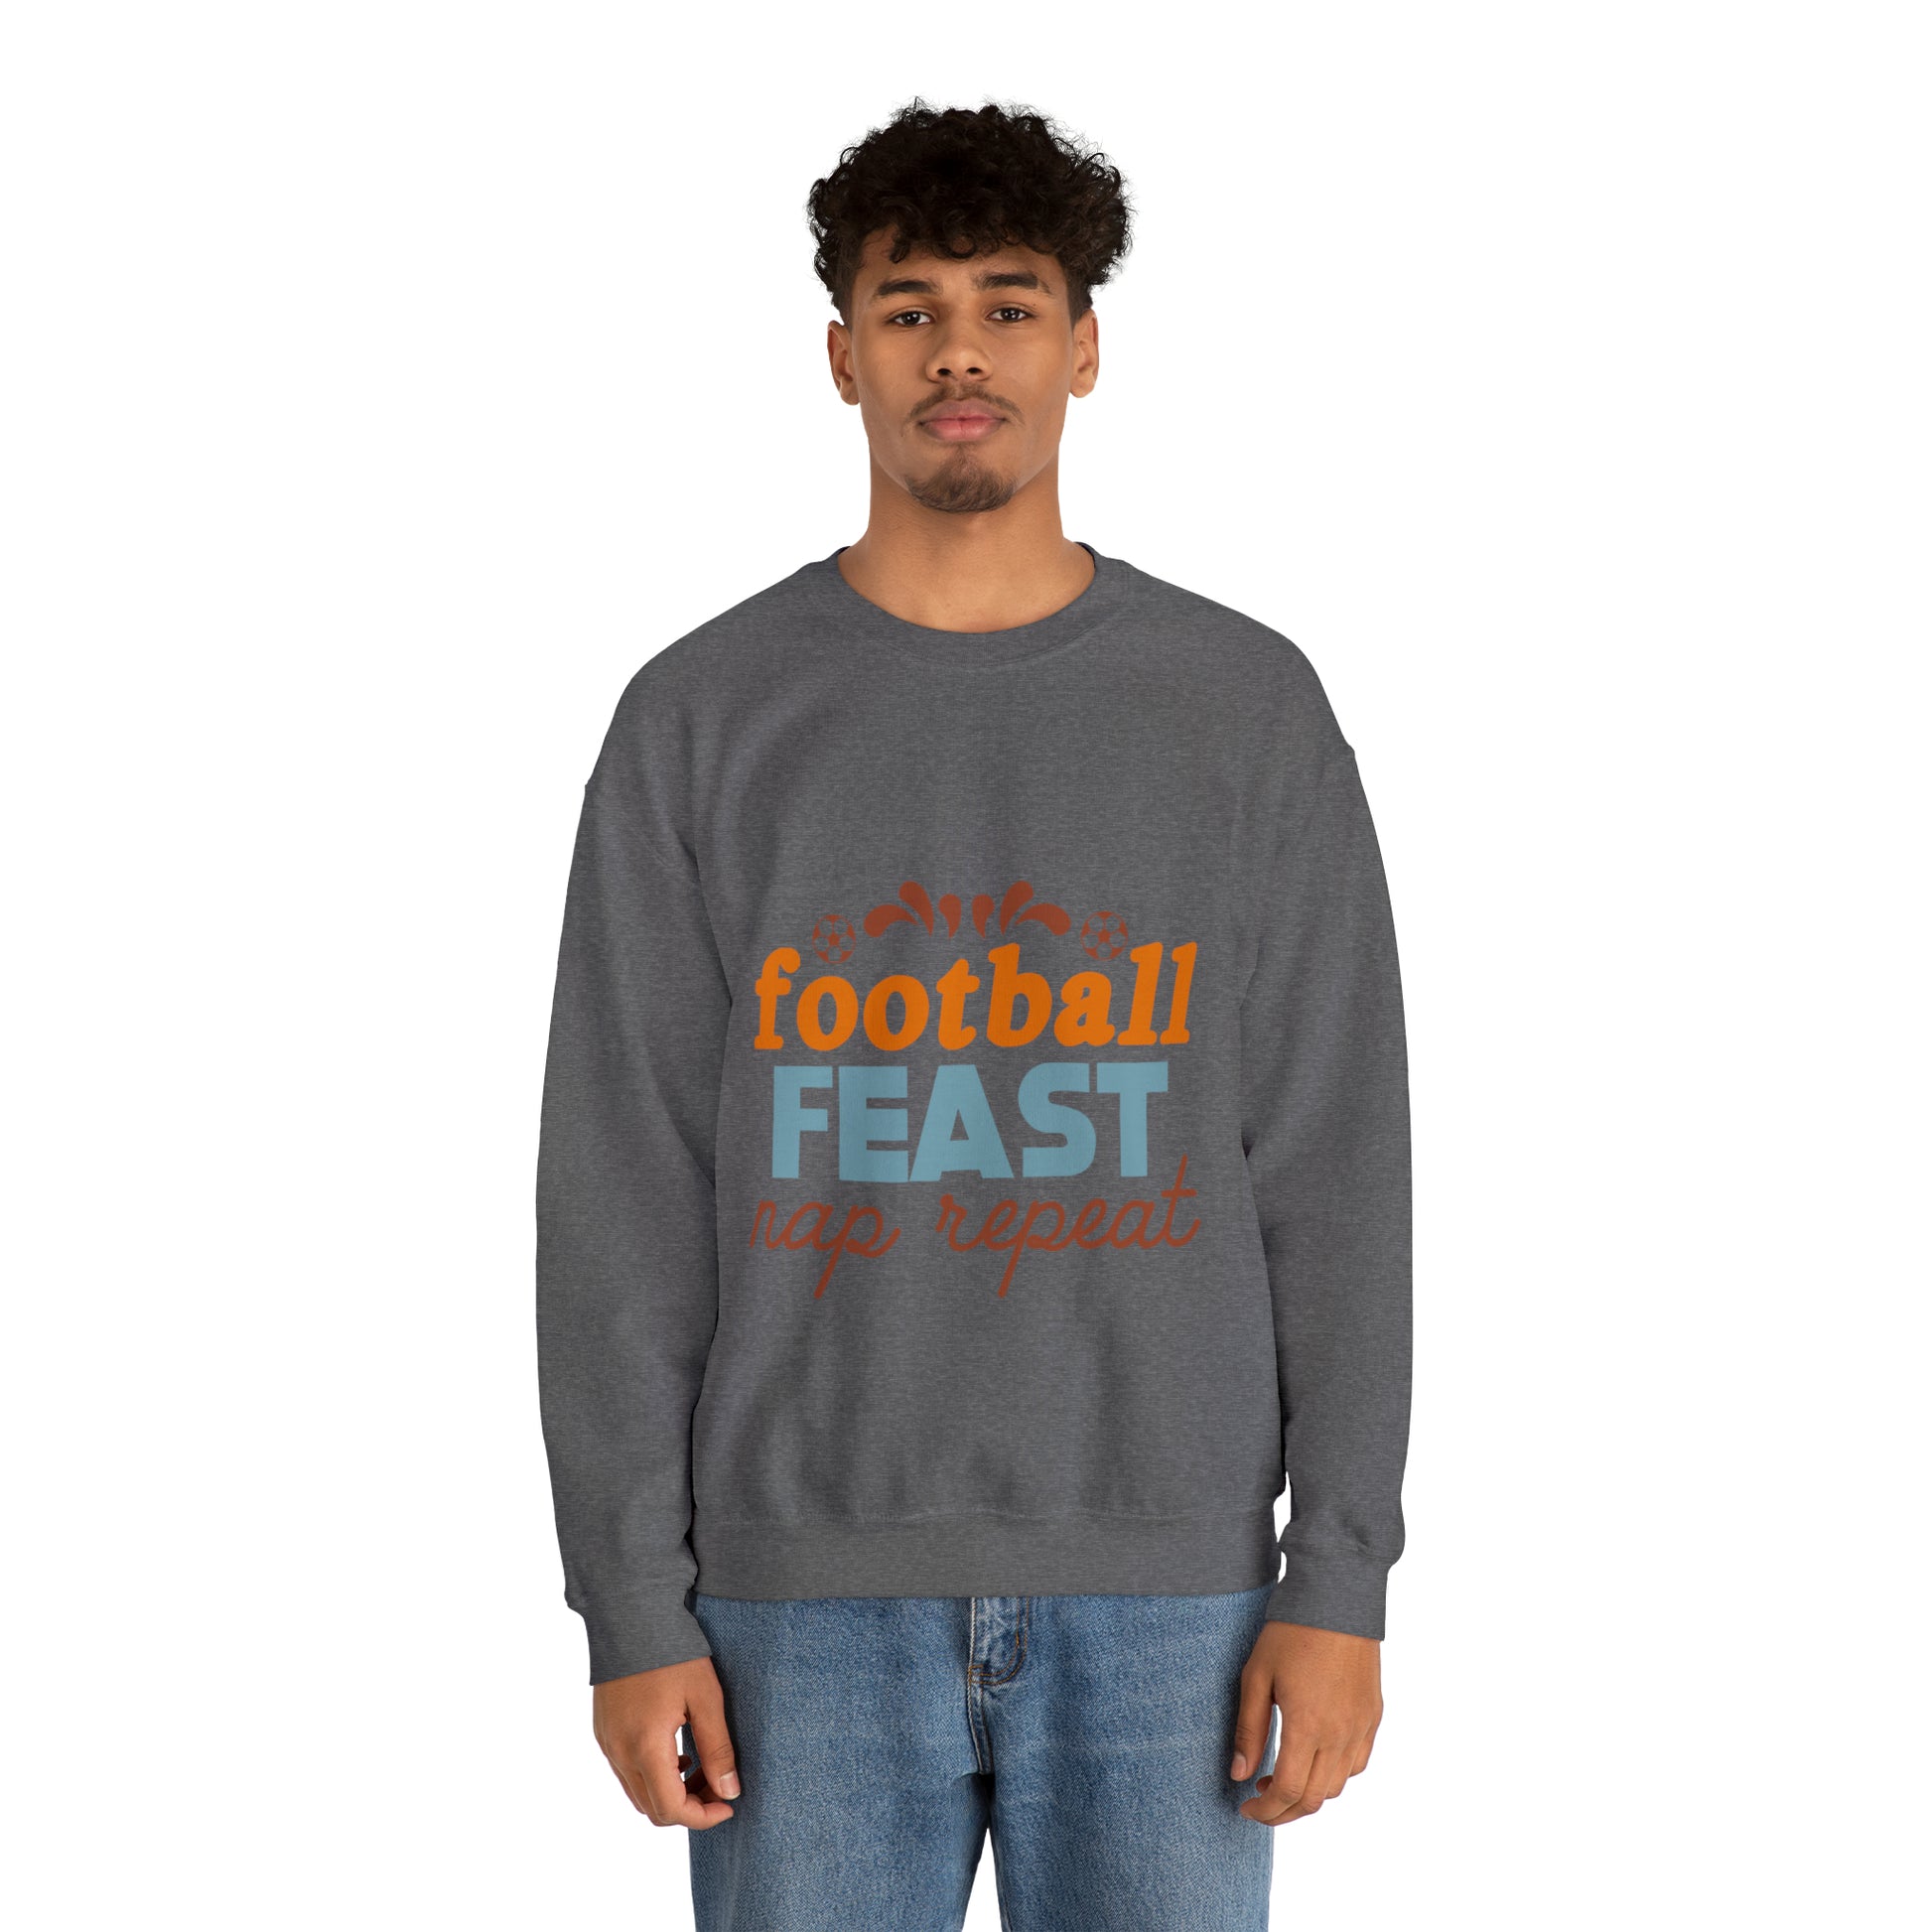 Football Feast Unisex Crewneck Sweatshirt image